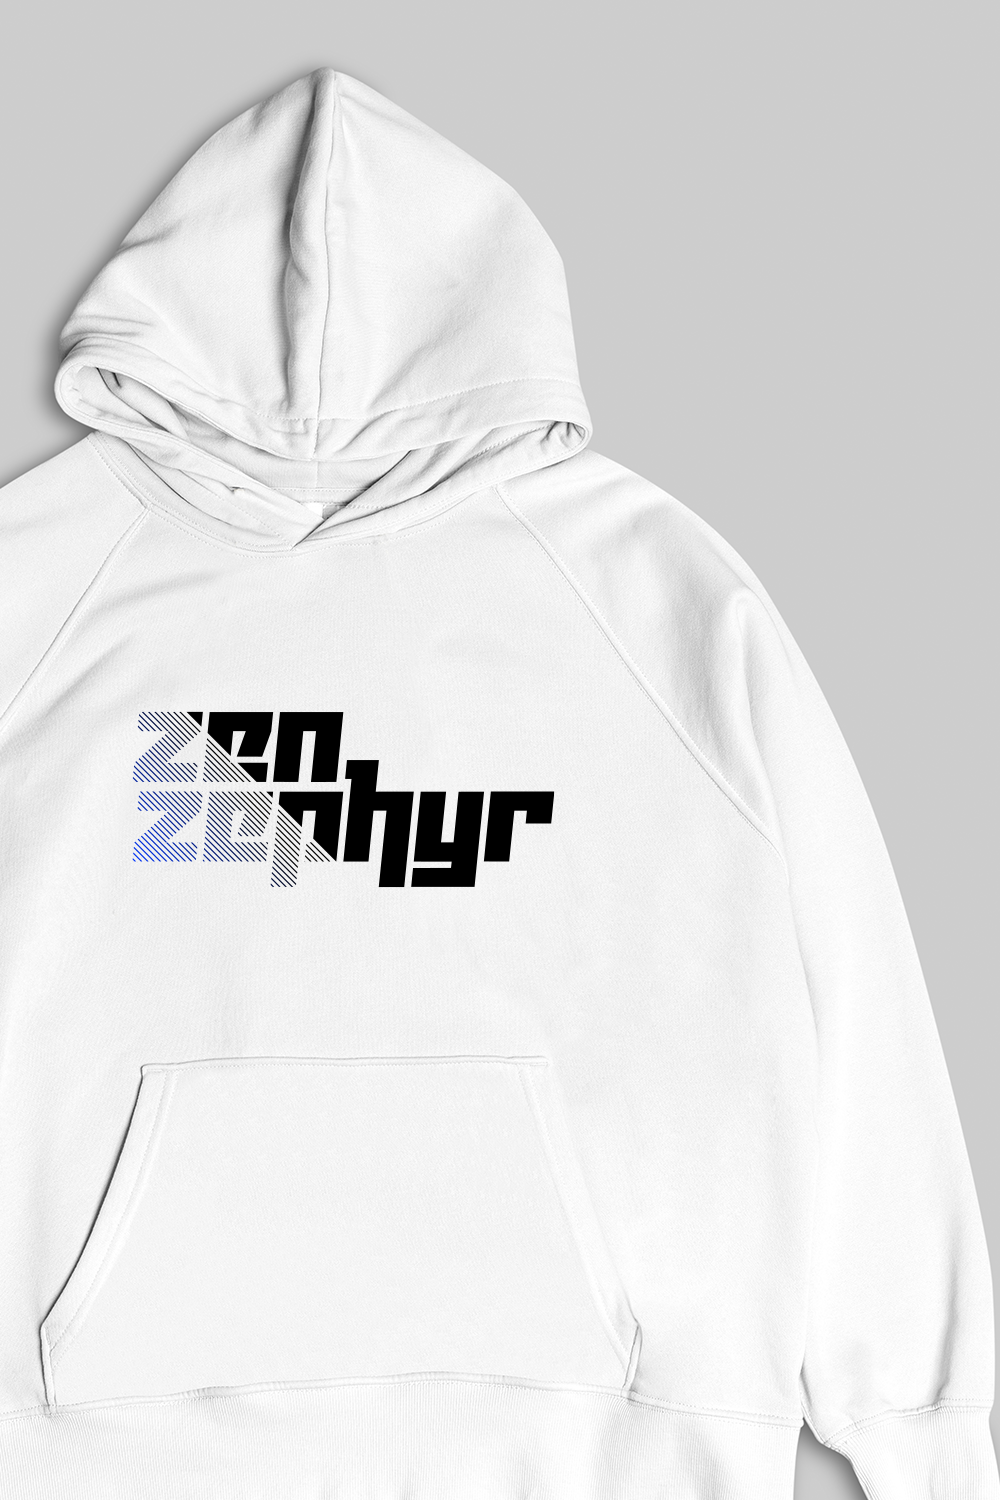 Zen Zephyr White Hoodie